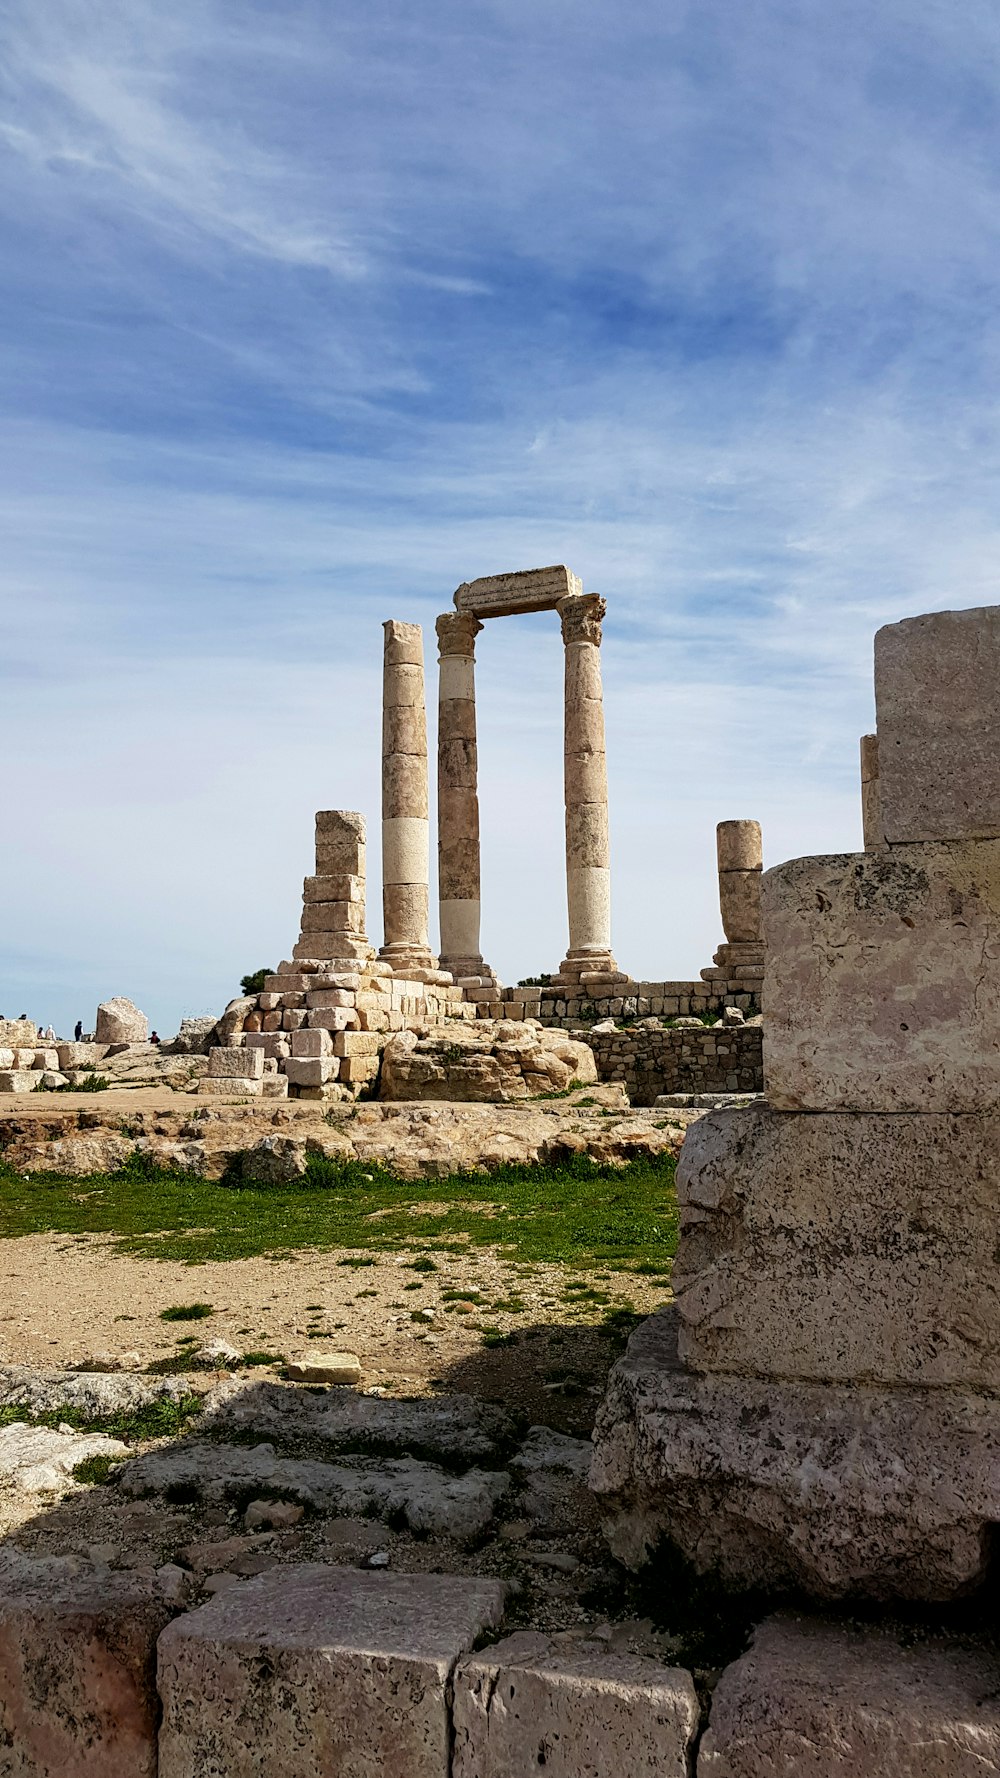 Les ruines de l’ancienne ville de Palmyre